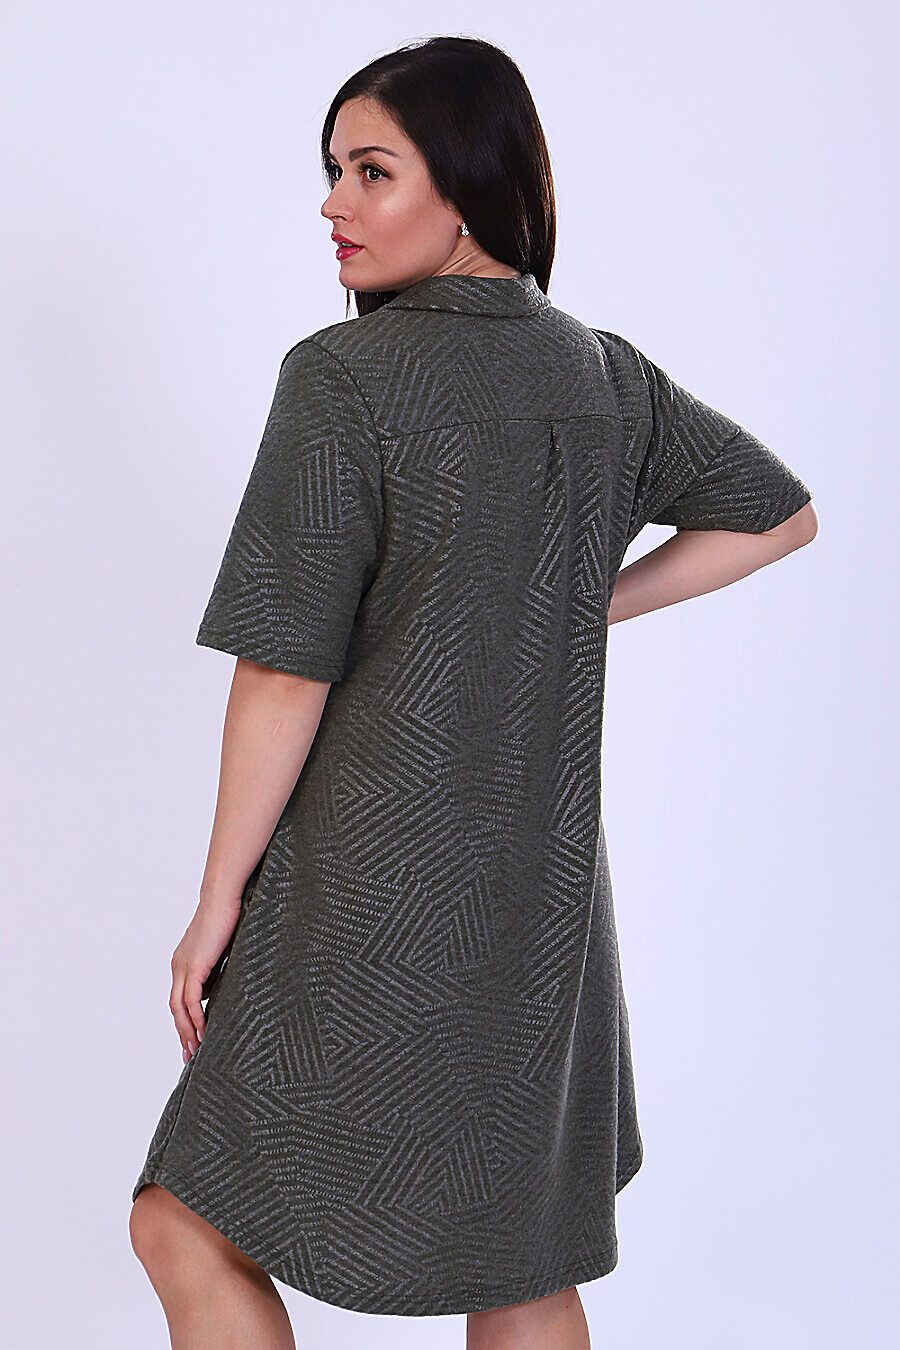 Платье 52193 для женщин НАТАЛИ 808062 купить оптом от производителя. Совместная покупка женской одежды в OptMoyo